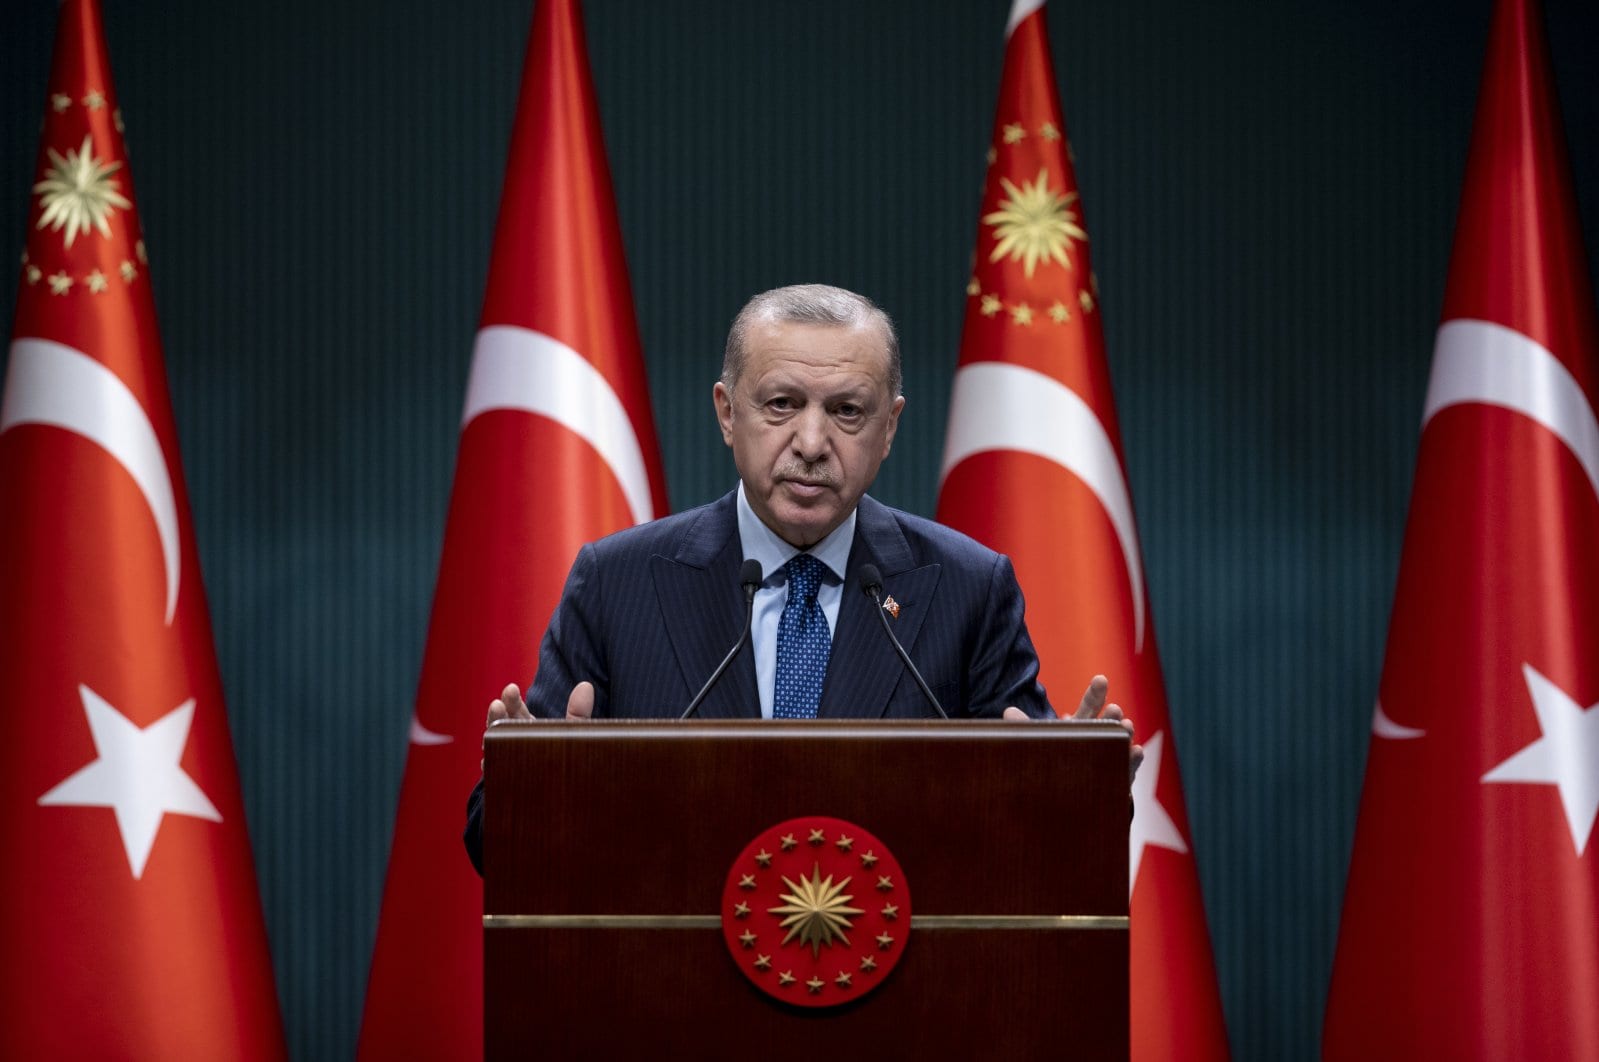 Турция ослабляет ограничения по COVID-19, открывает кафе и рестораны